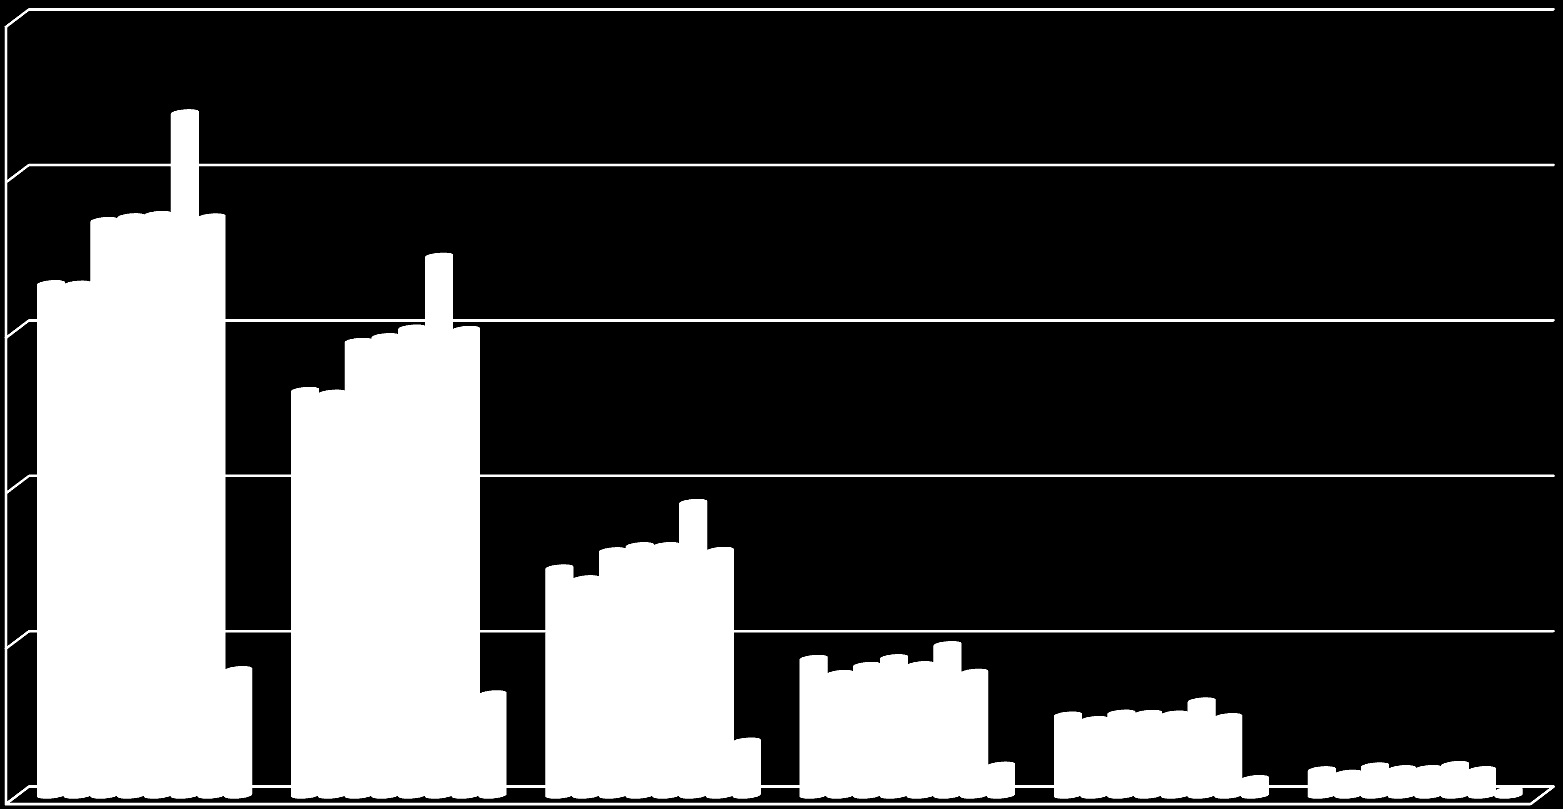 Localização do ferimento Estado do Rio de Janeiro 2007 a 2014 25.000 20.000 15.000 10.000 5.